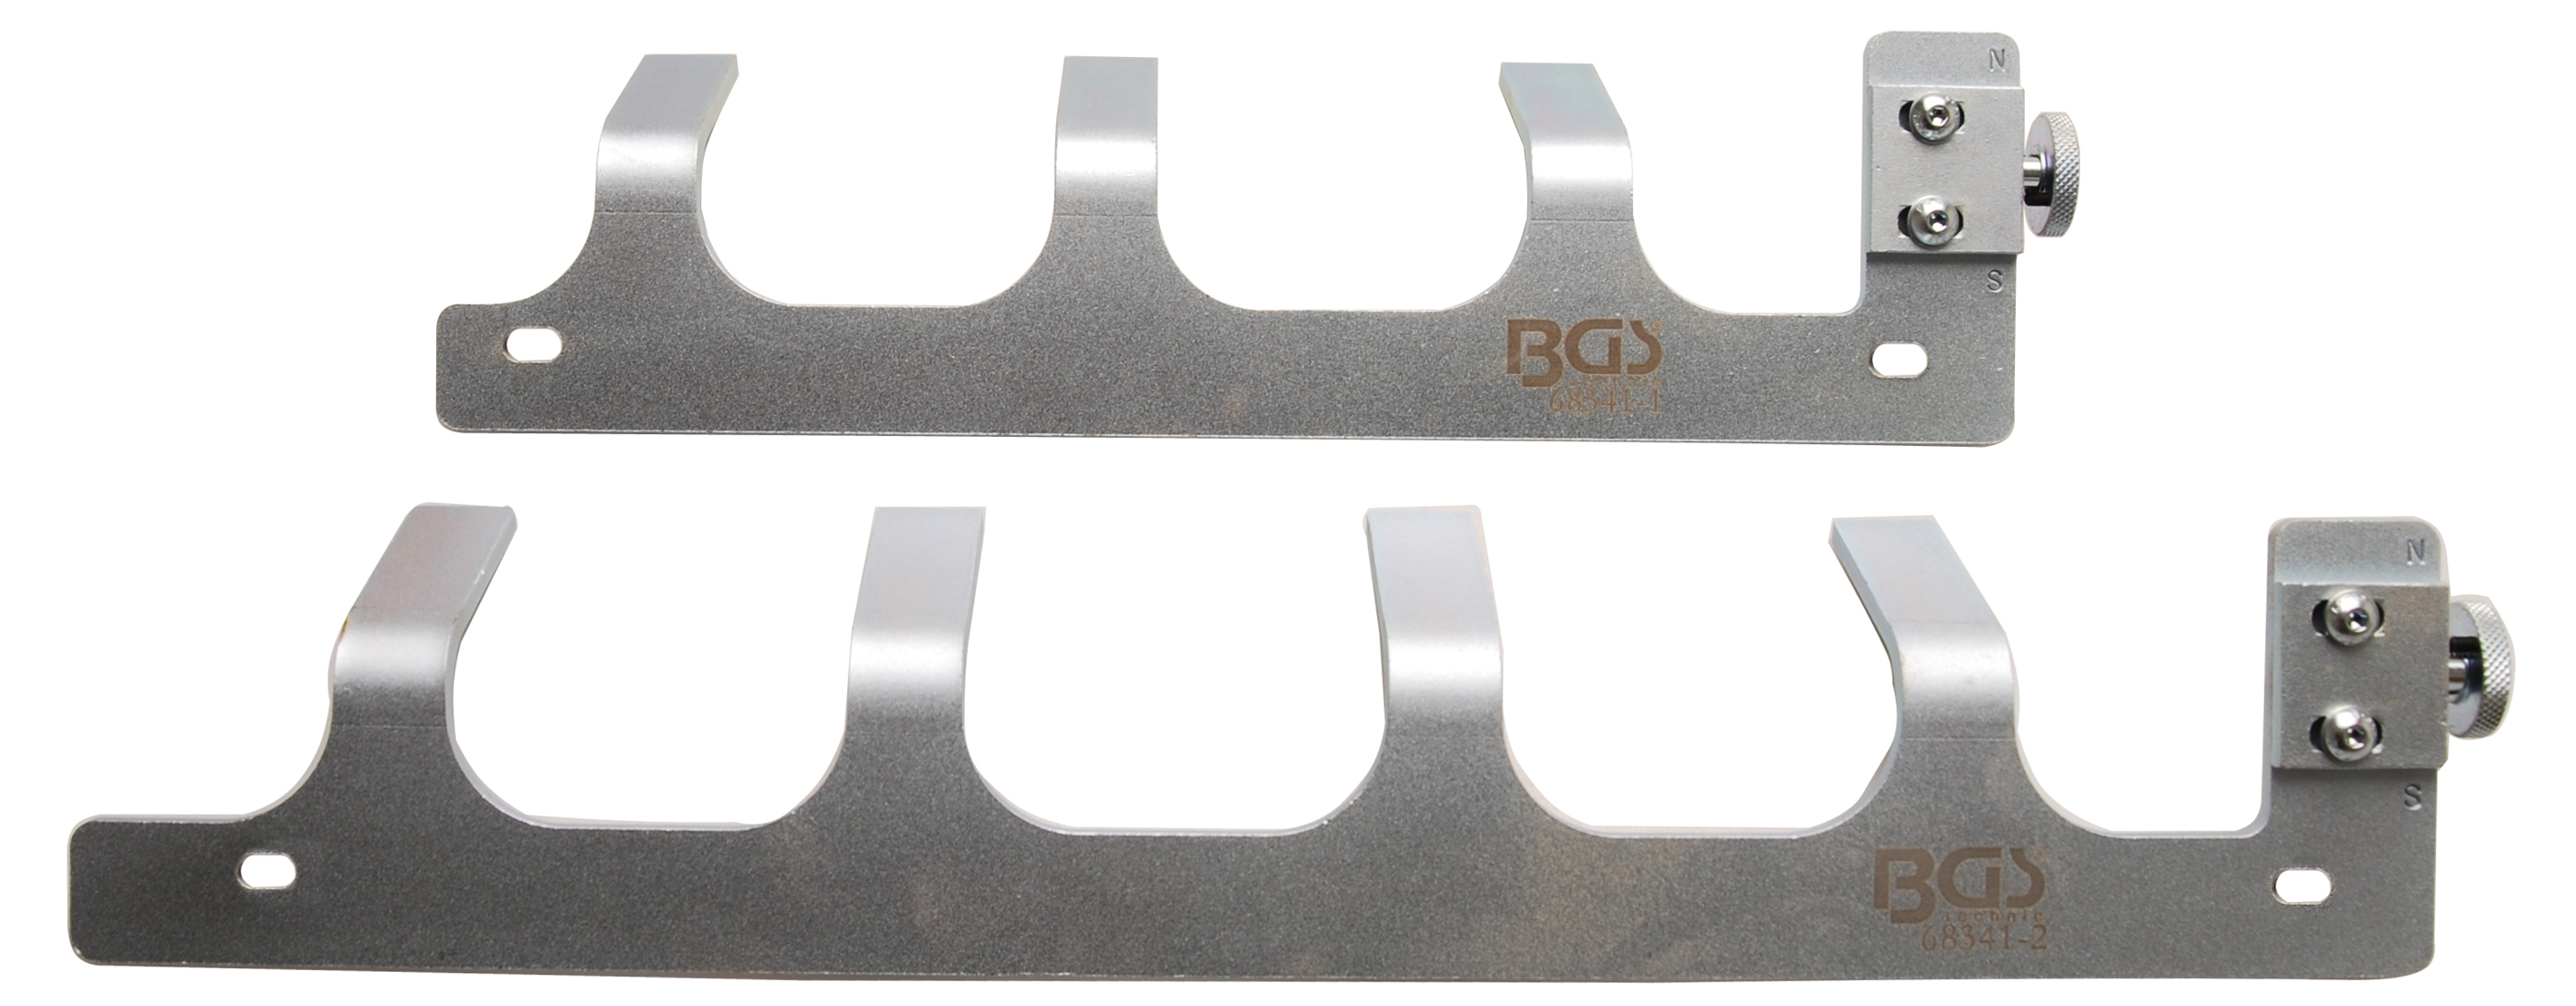 BGS Einstelllehren | für VAG Pumpe-Düse-Einheit an 3- und 4-Zylinder-Motoren